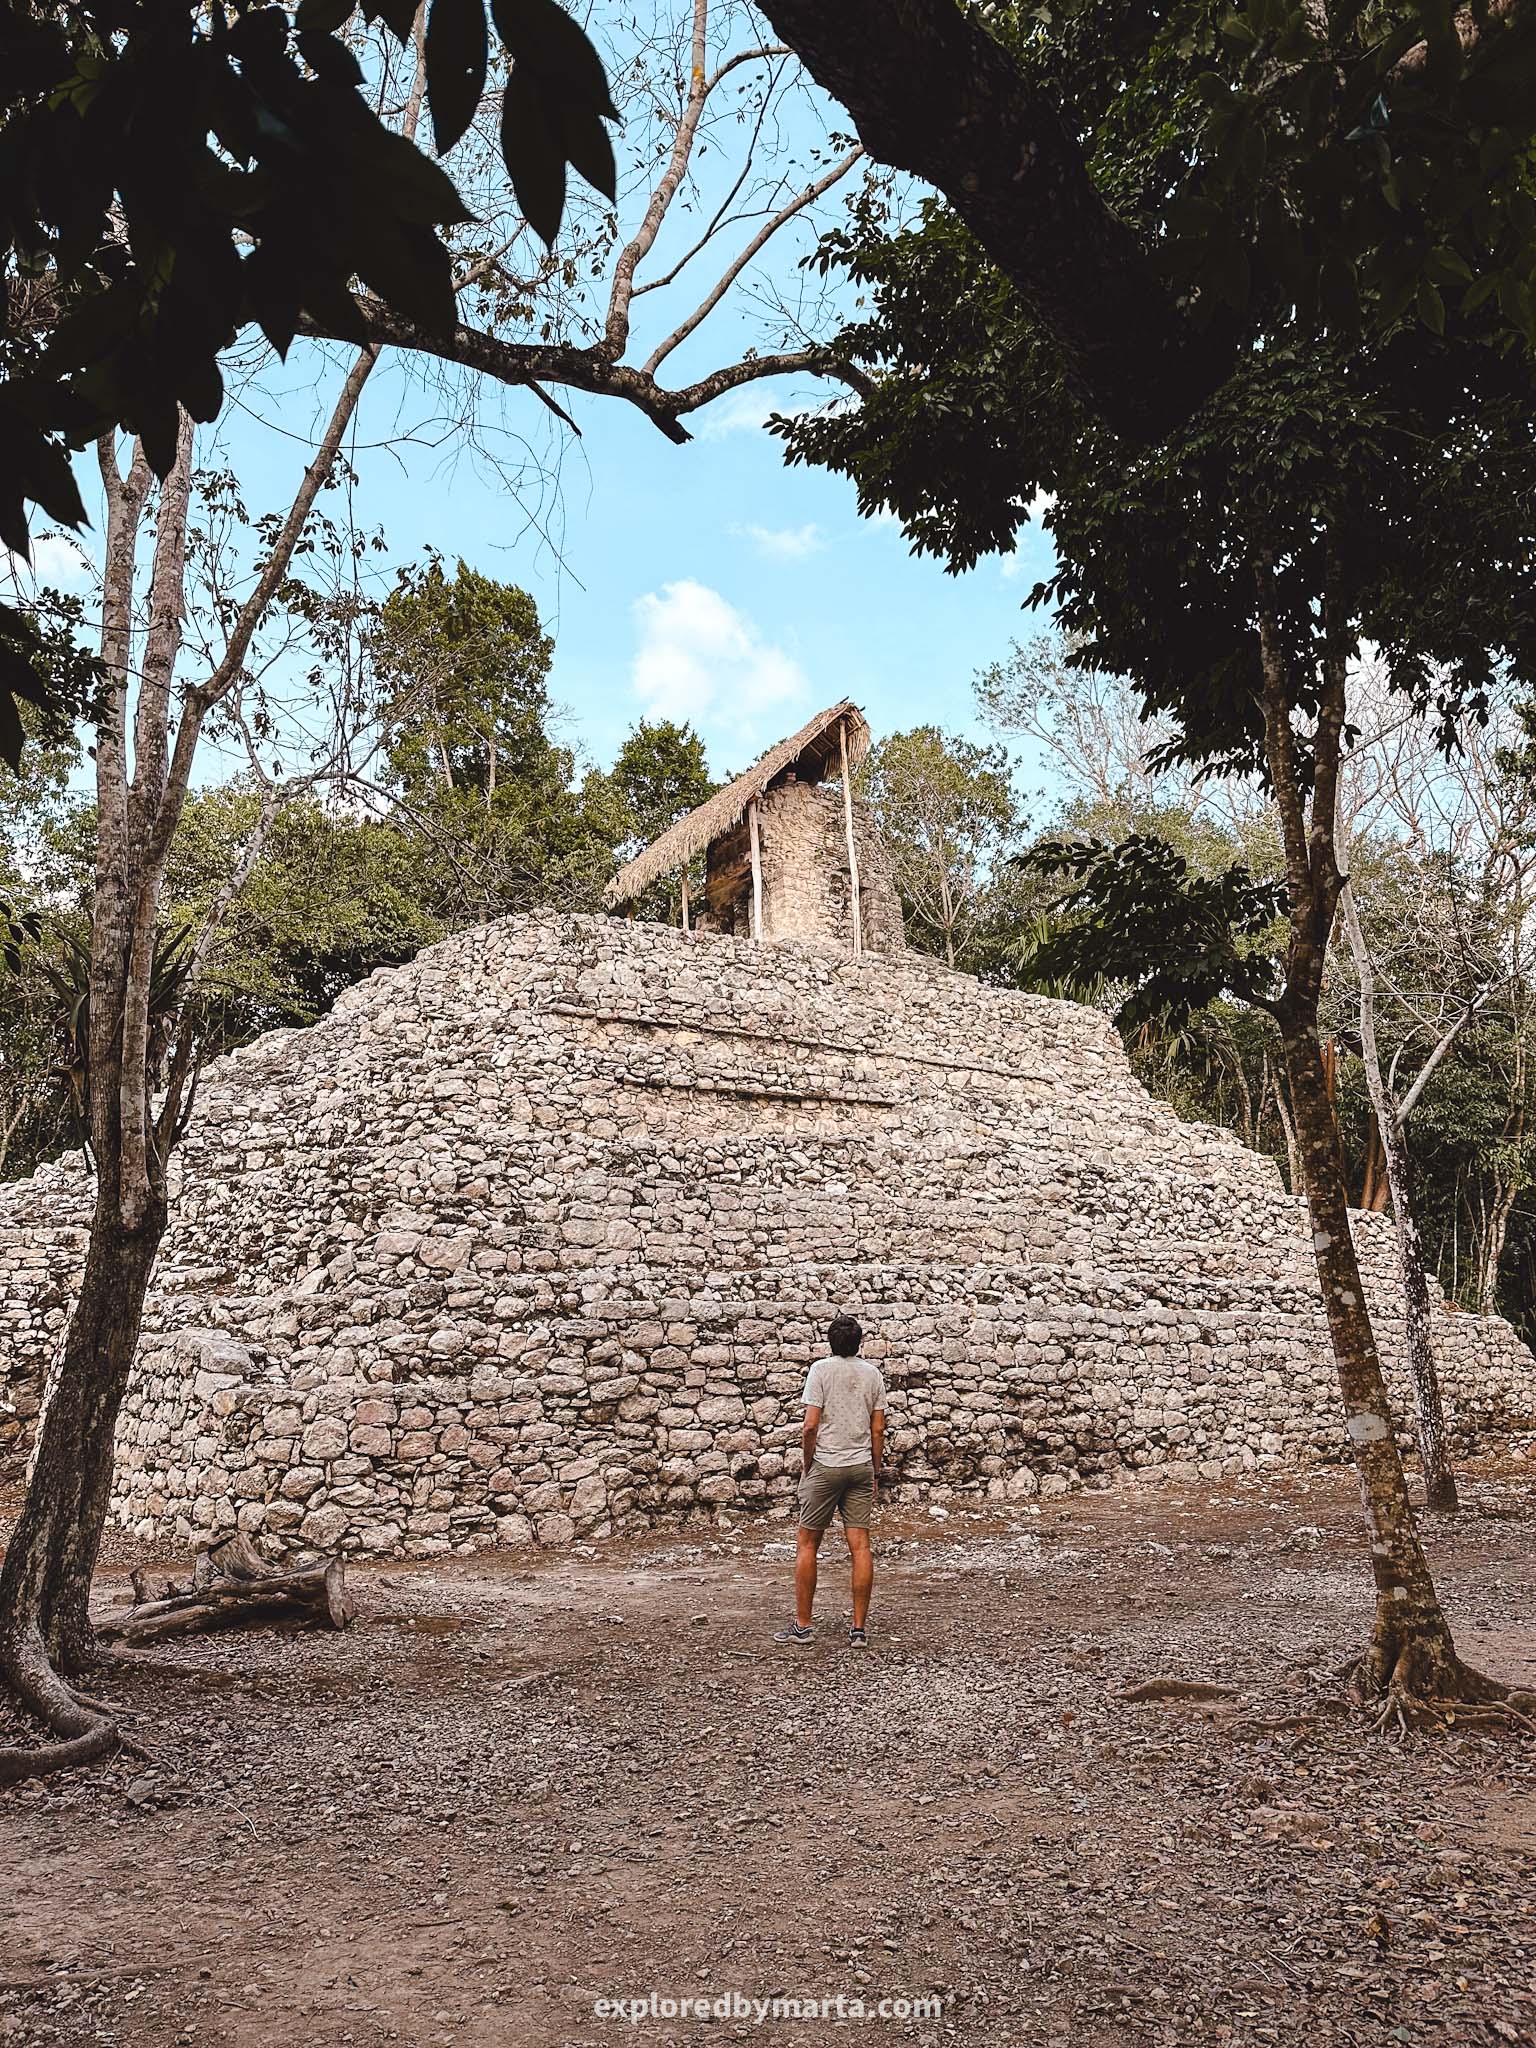 Yucatan Peninsula, Mexico - Mayan pyramids and ruins of an ancient Mayan city Coba at Coba archaeological zone